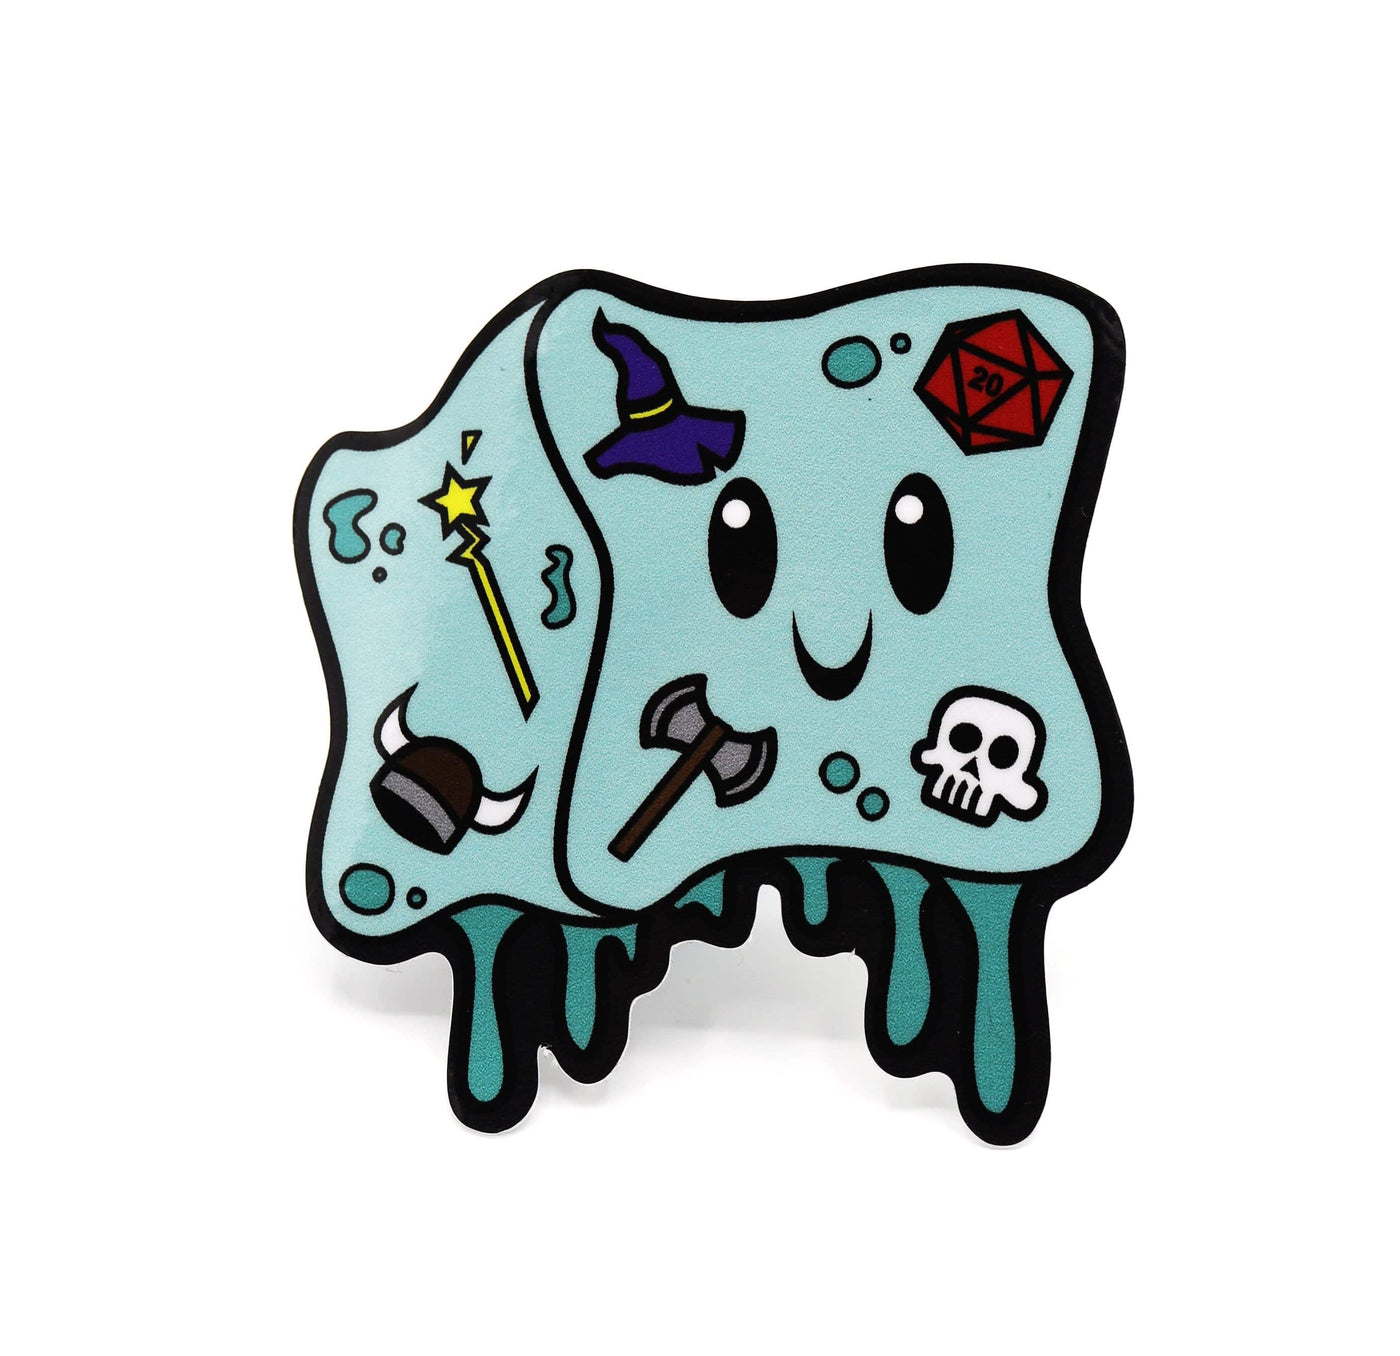 Monster Index Sticker: Gelly Cube Stickers Foam Brain Games